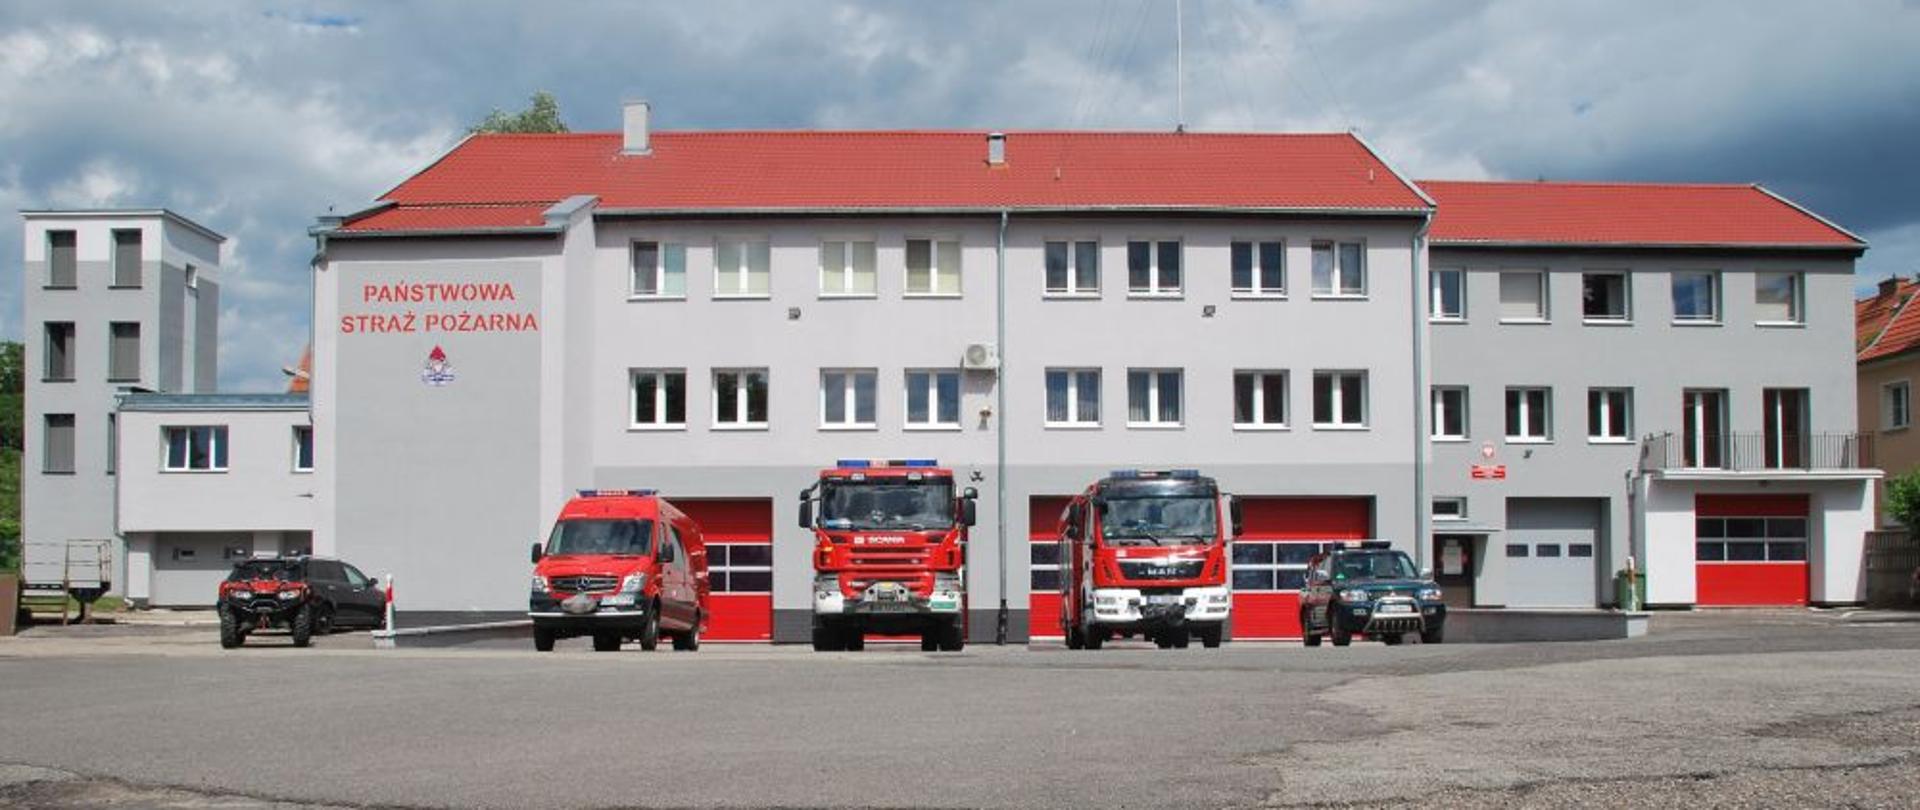 Widoczna od frontu jednostka ratowniczo gaśnicza nr 2 w Elblągu. Przed bramami garażowymi stoją wystawione pojazdy pożarnicze.